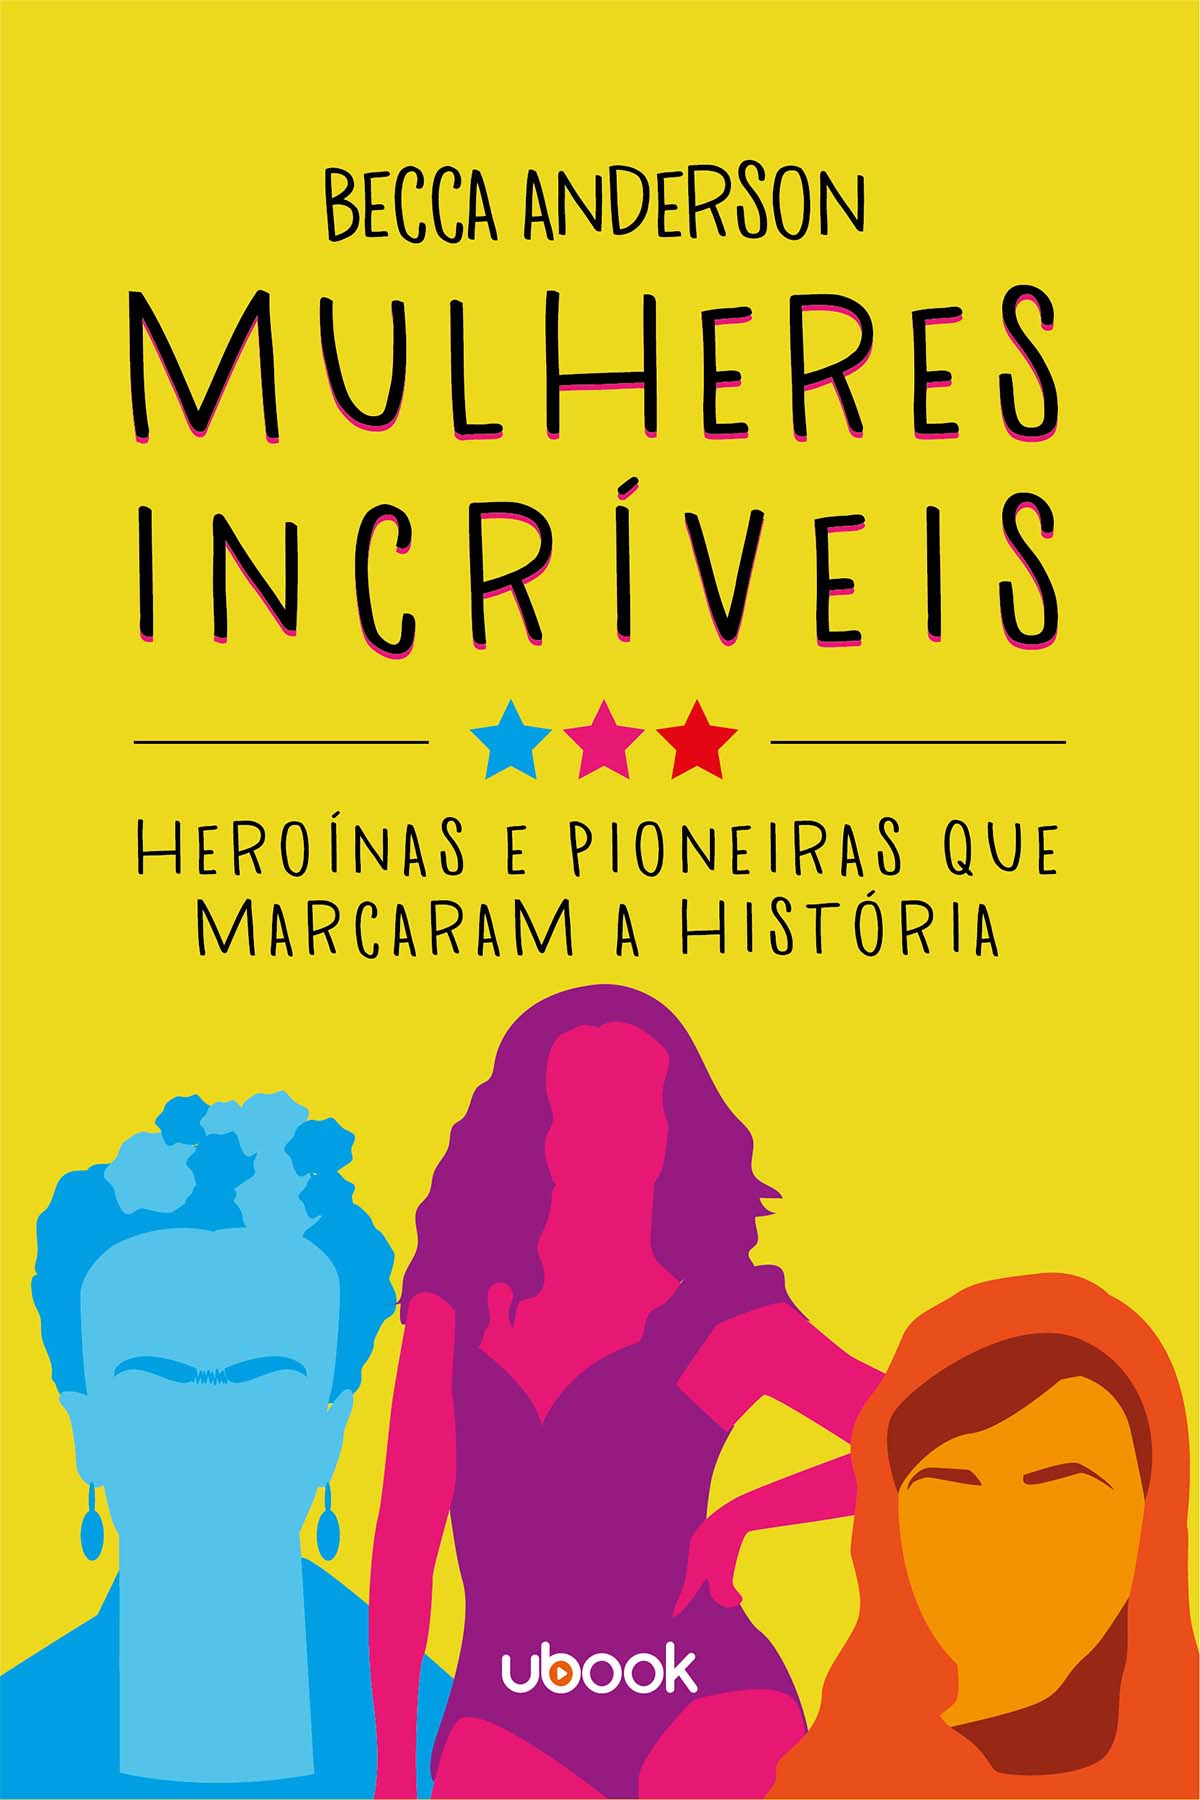 Mulheres incríveis: heroínas e pioneiras que marcaram a história